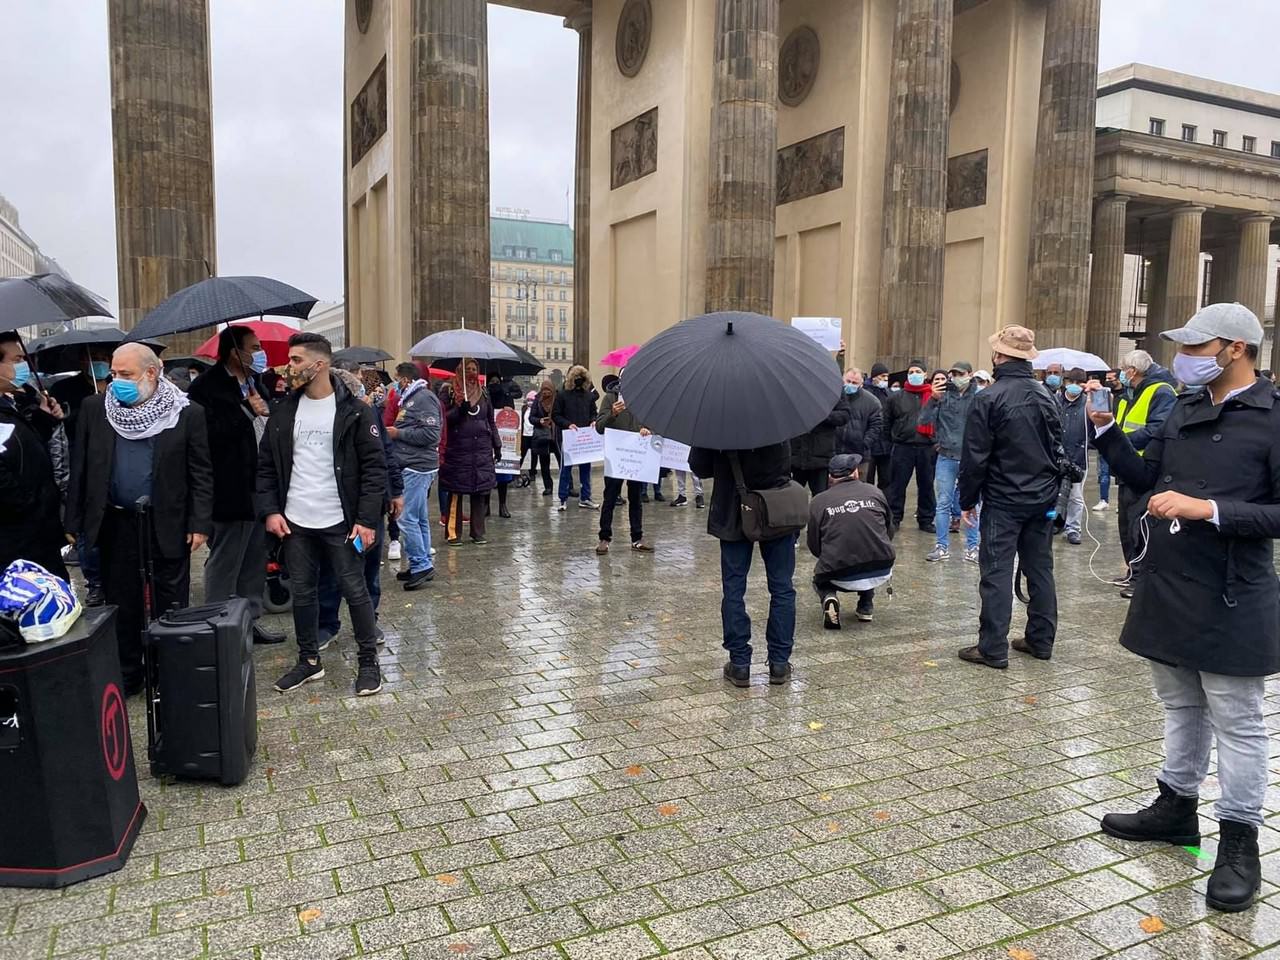 وقفة إحتجاجيّة أمام السّفارة الفرنسيّة في برلين احتجاجاً على تصريحات الرّئيس إيمانويل ماكرون